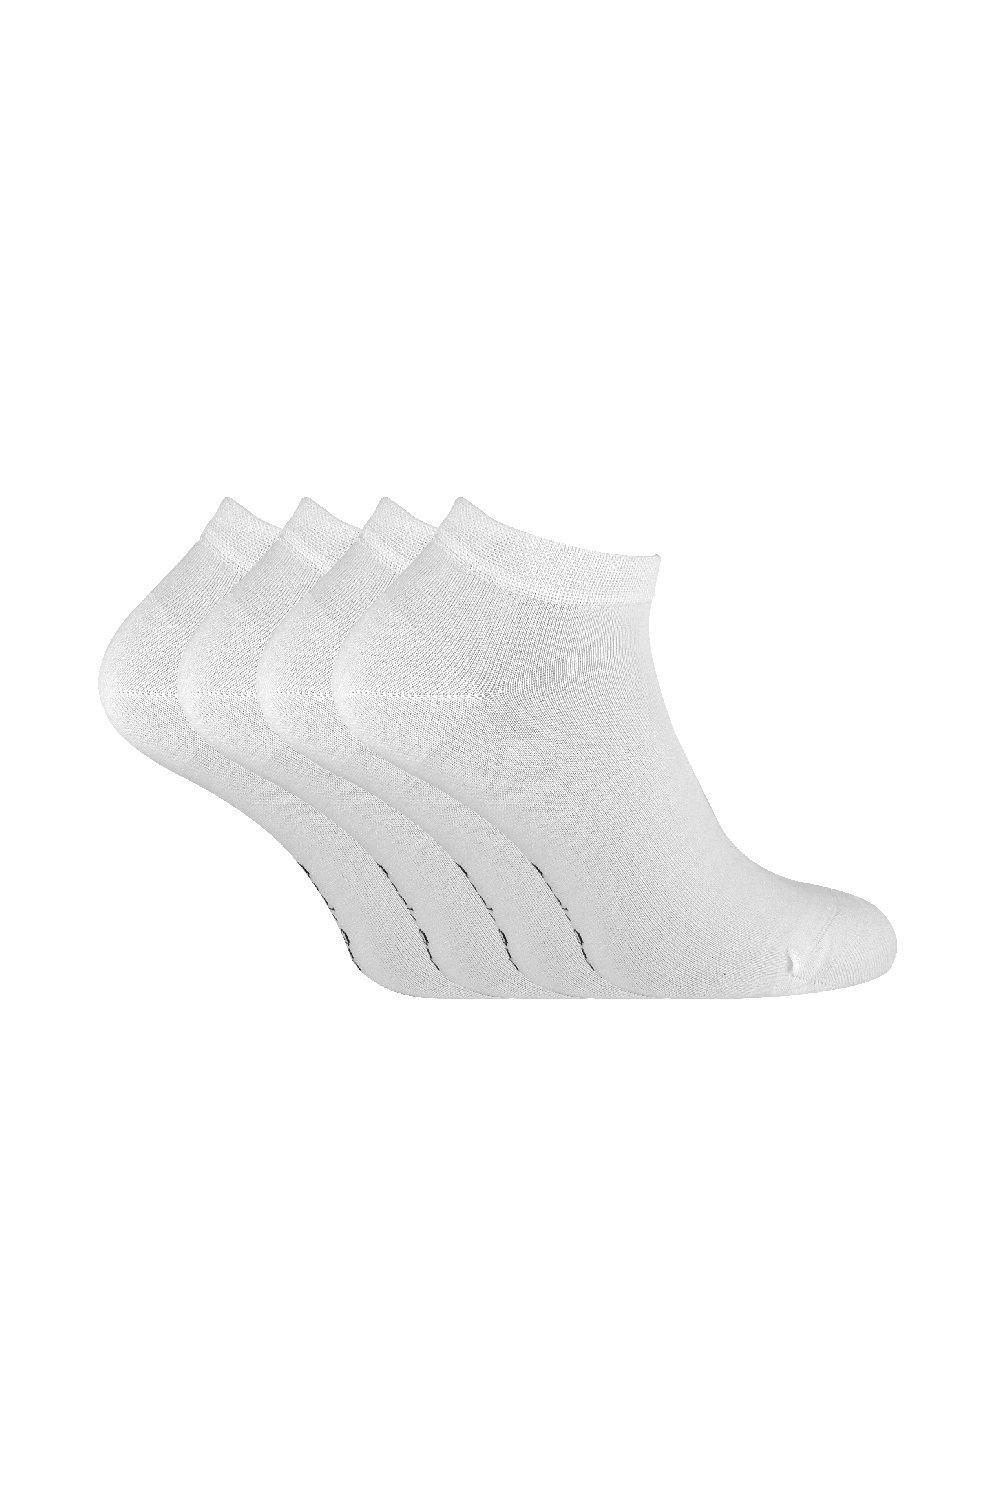 4 пары мягких бамбуковых дышащих низких спортивных носков до щиколотки Sock Snob, белый